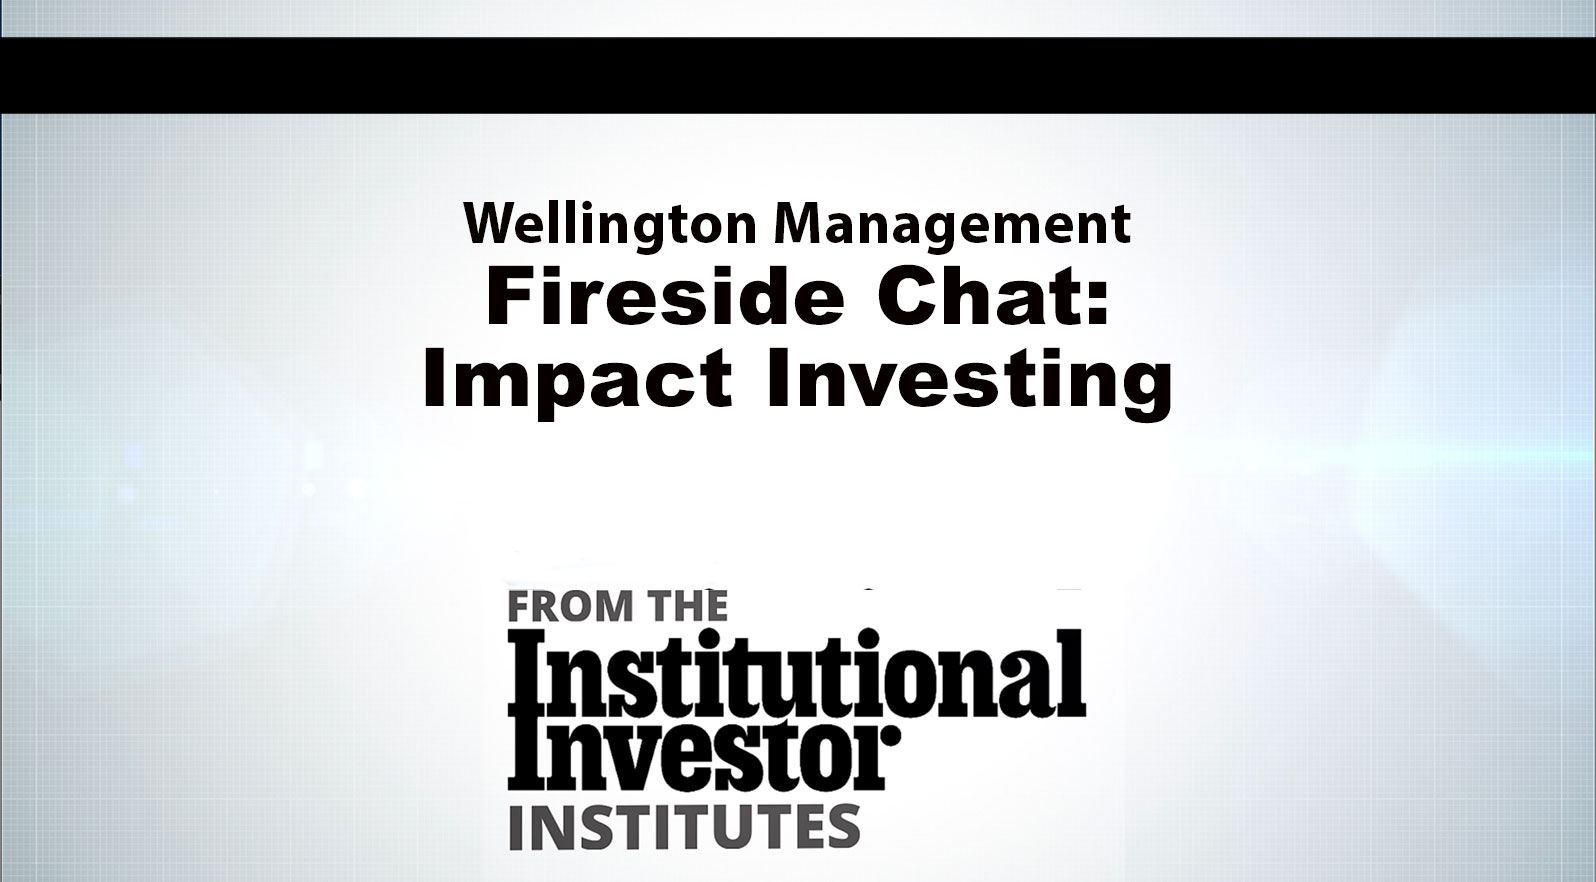 与惠灵顿管理的炉边聊天:影响投资